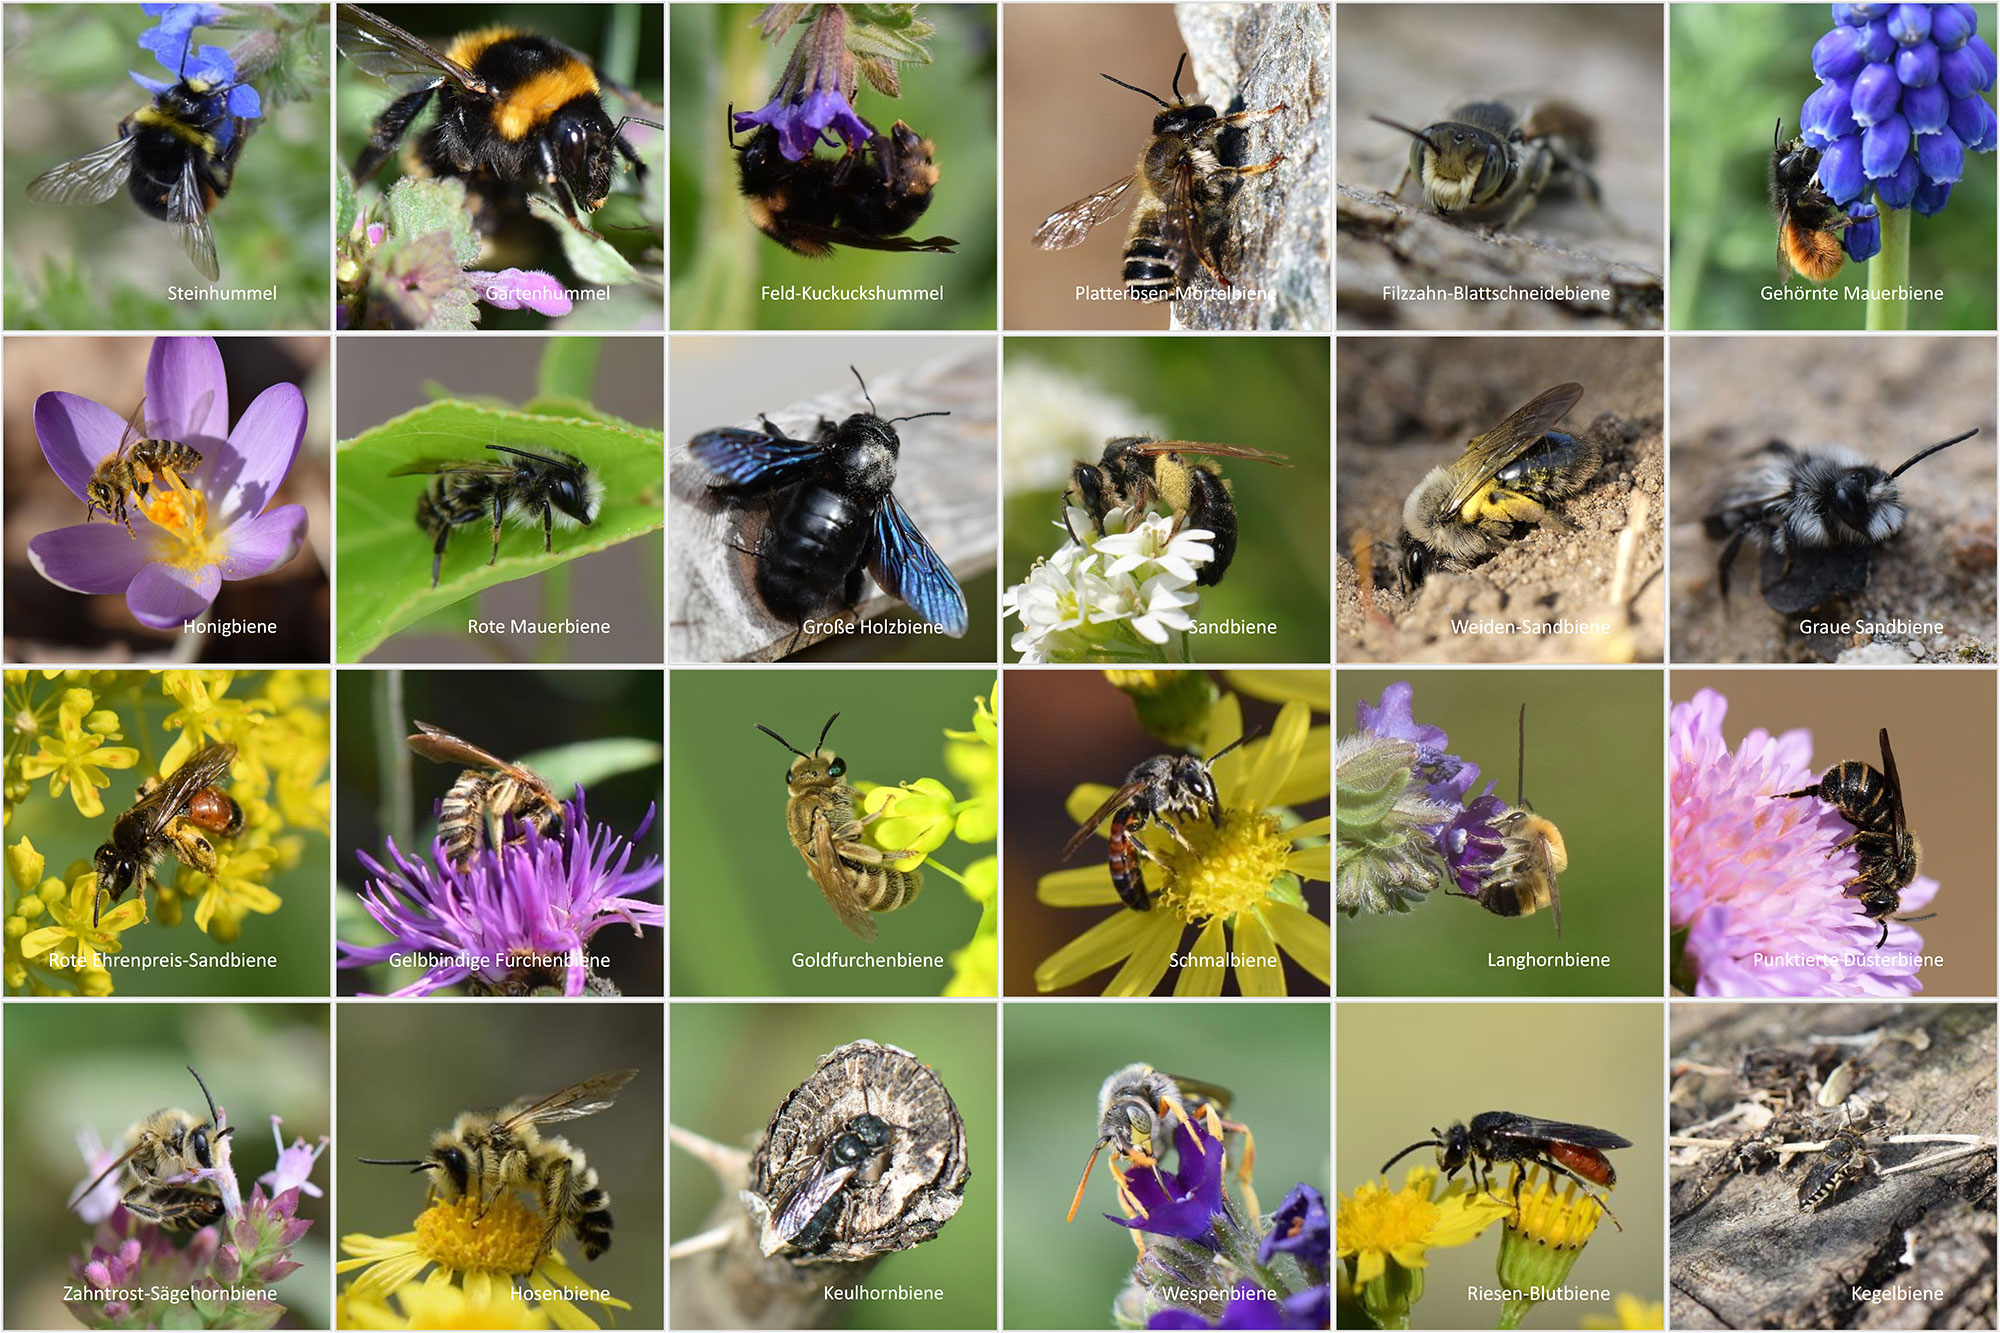 You are currently viewing Biotop: Einladung zum Fotoworkshop: Insekten fotografieren am 09. Juli